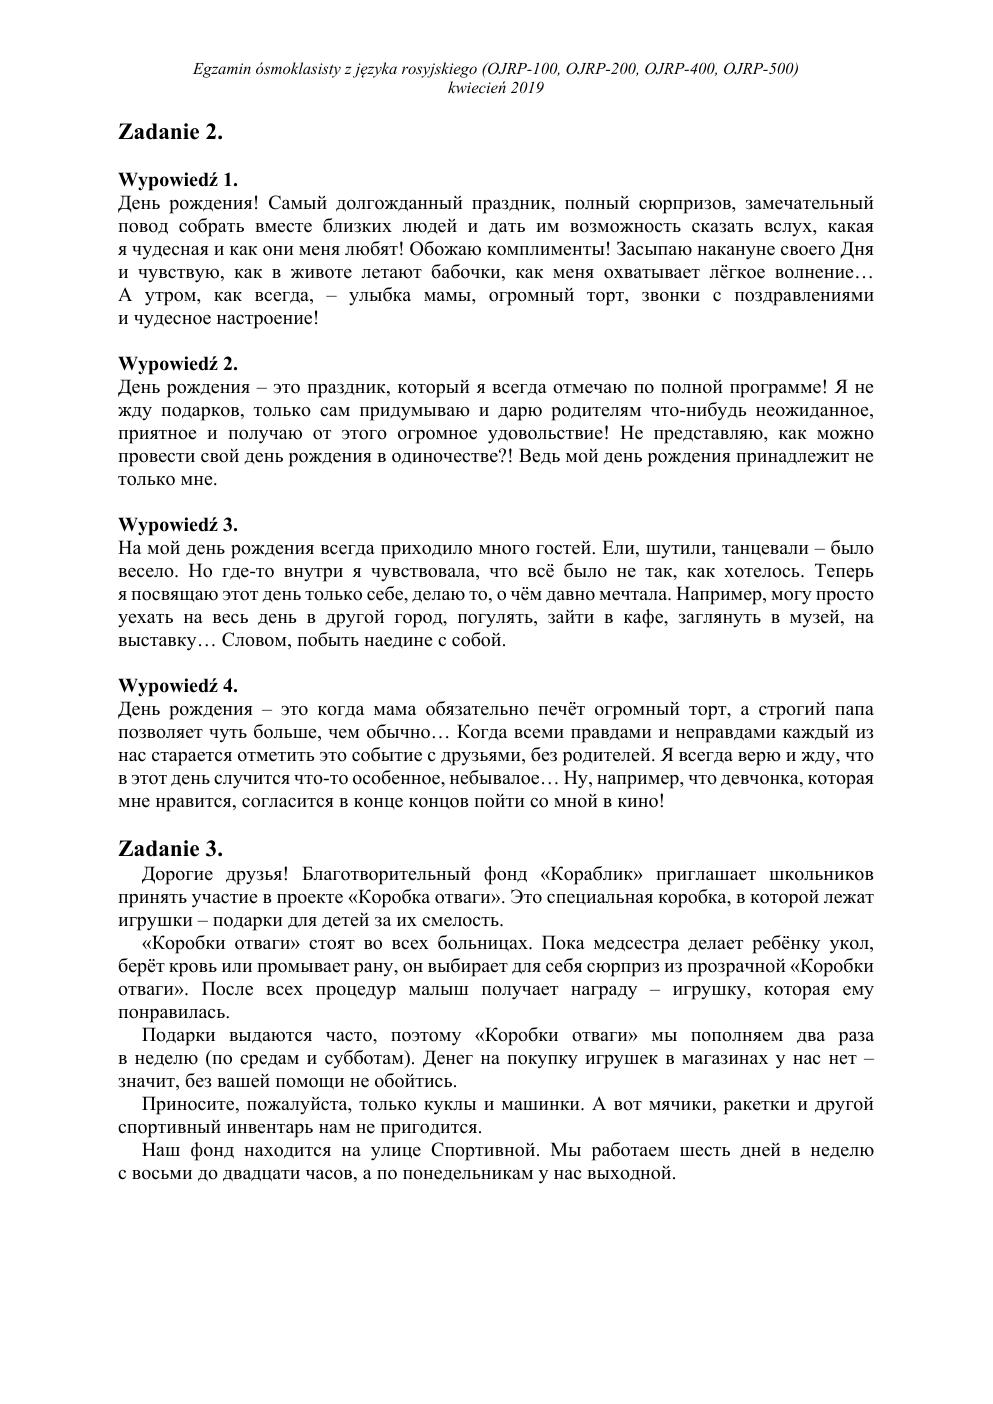 transkrypcja - rosyjski - egzamin ósmoklasisty 2019-2